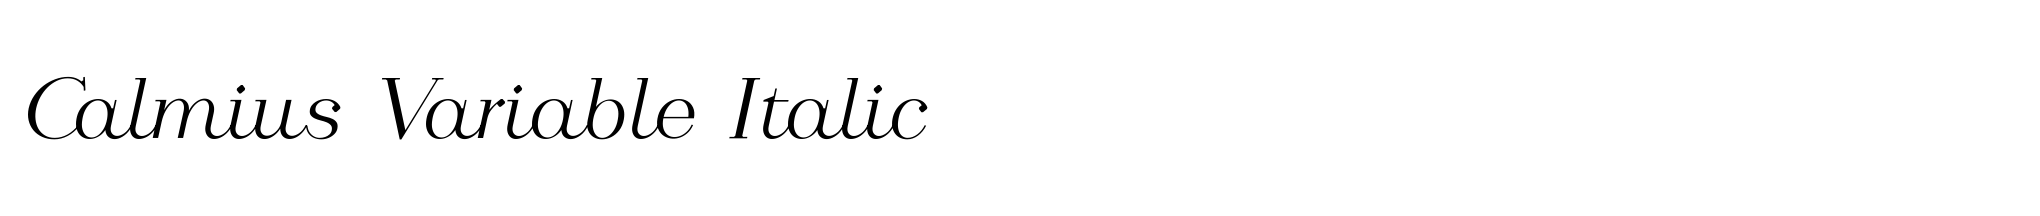 Calmius Variable Italic image